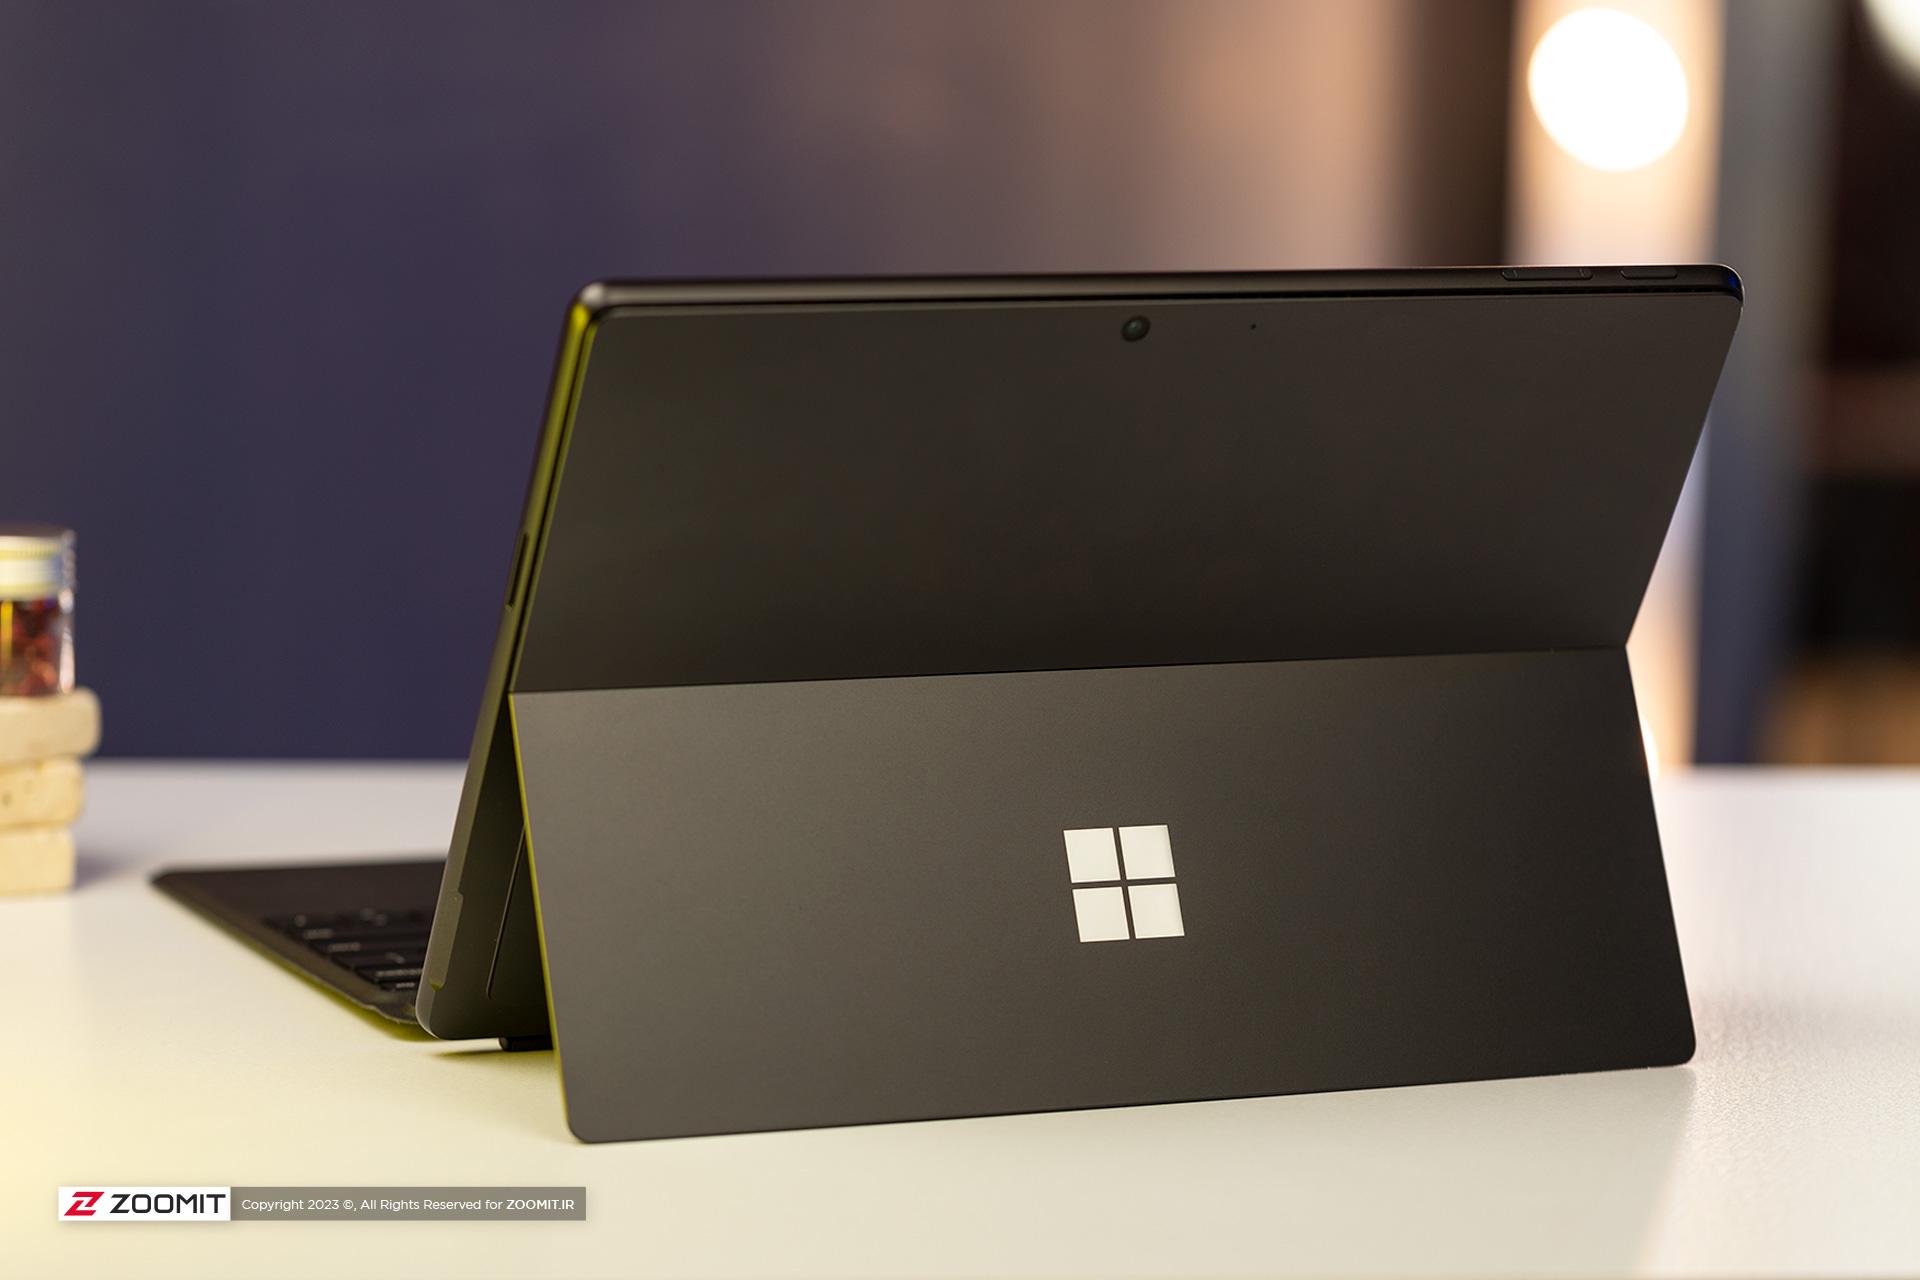 مرجع متخصصين ايران پشت لپ تاپ سرفيس پرو 9 مايكروسافت / Microsoft Surface Pro 9